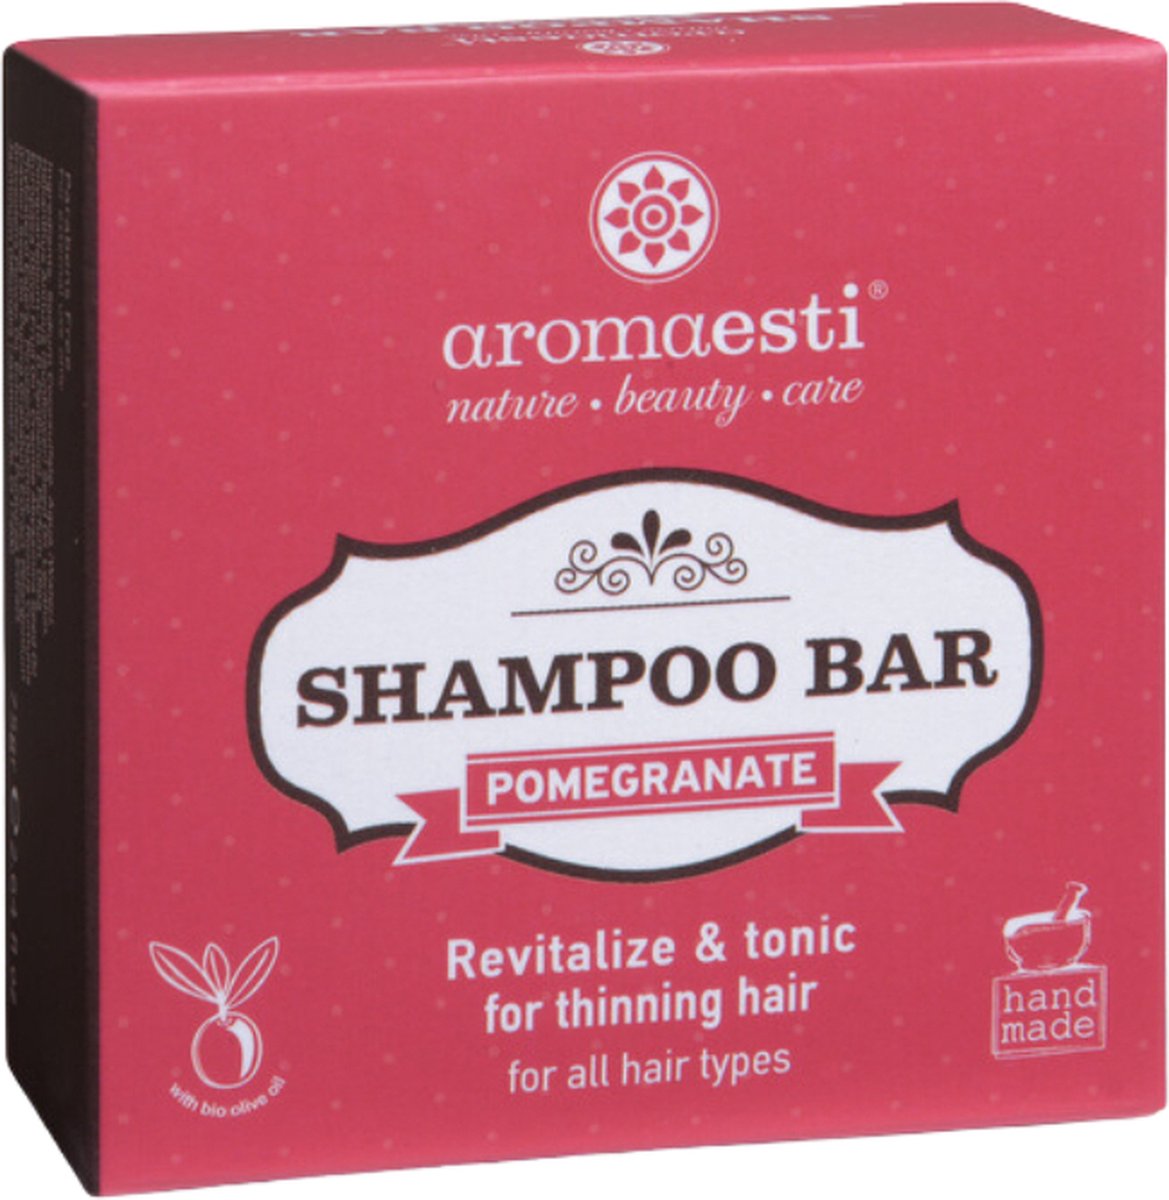 Aromaesti Solid Shampoo Bar Pomegranate - Granaatappel - shampoo voor dunner wordend haar - zero waste - solid shampoo - vegan - biologisch - diervriendelijk - 60 gram